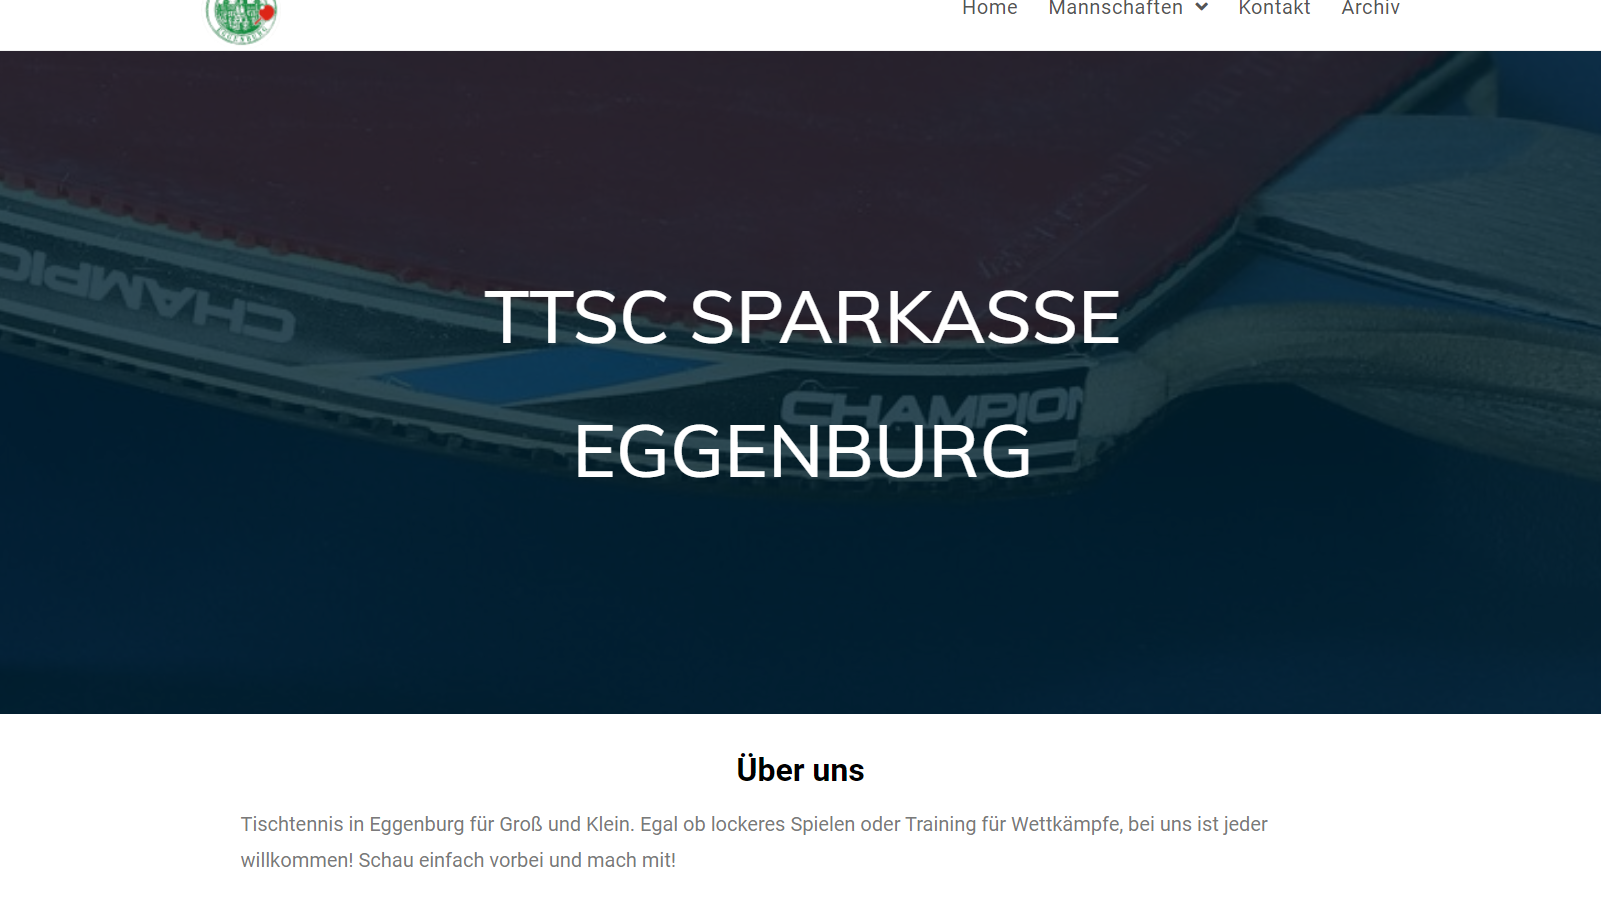 TTSC Sparkasse Eggenburg